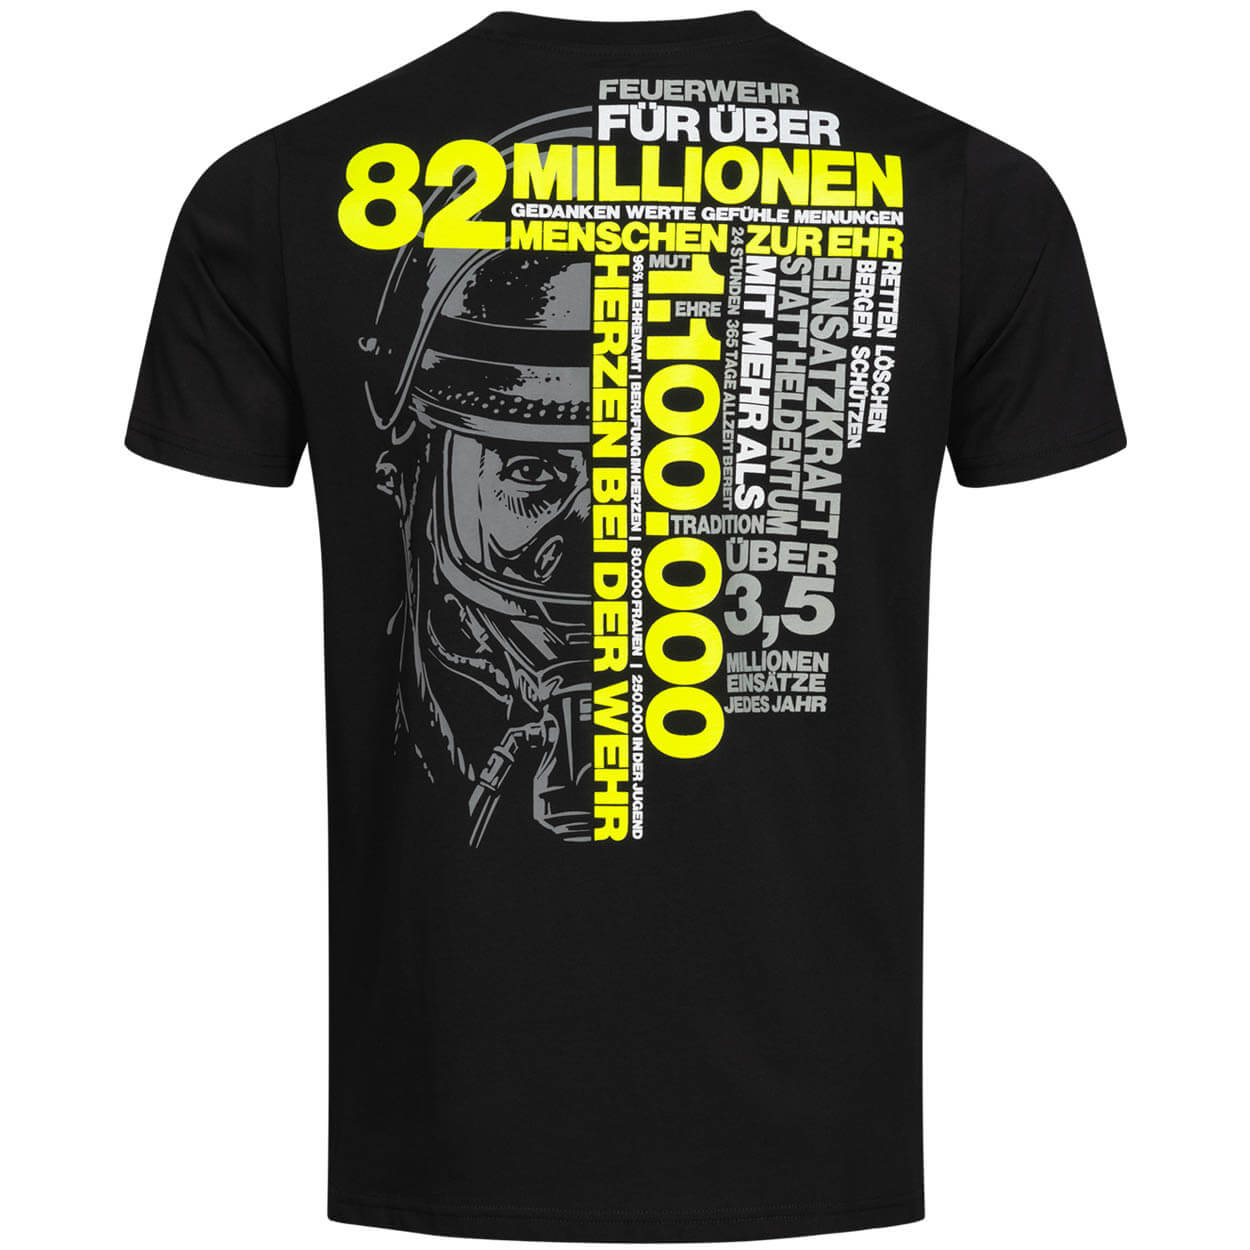 Feuerwehrmann T-Shirt - 82 Millionen Design